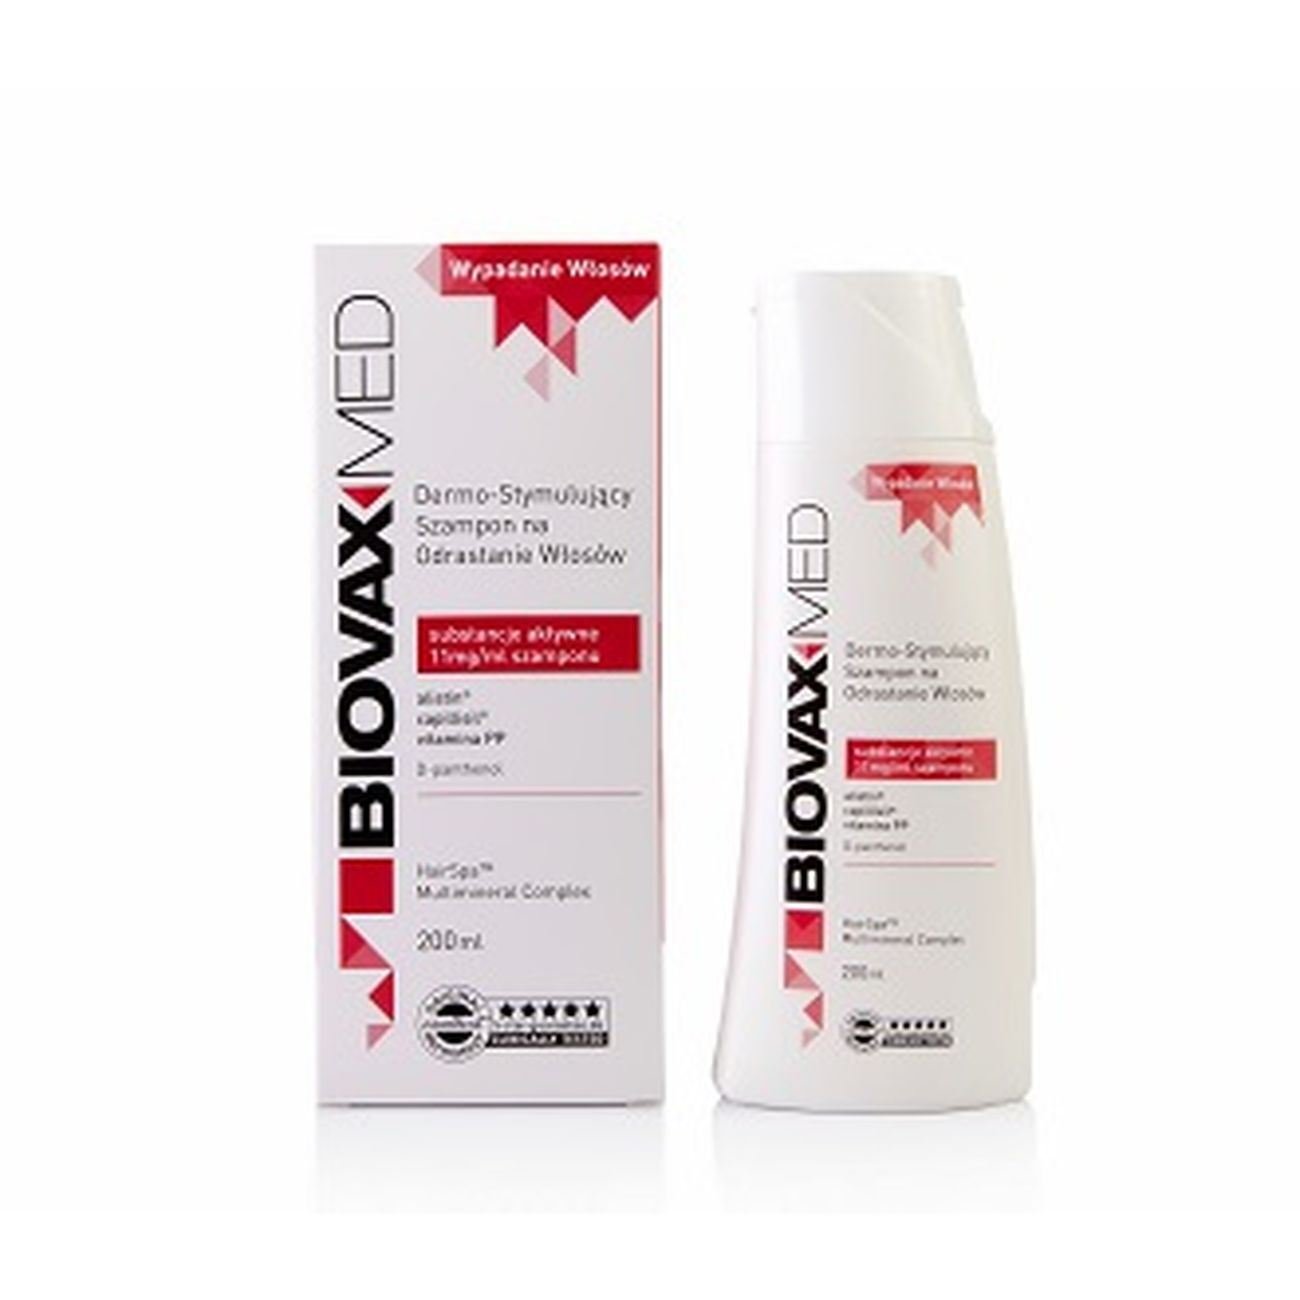 biovax na wypadanie włosów szampon